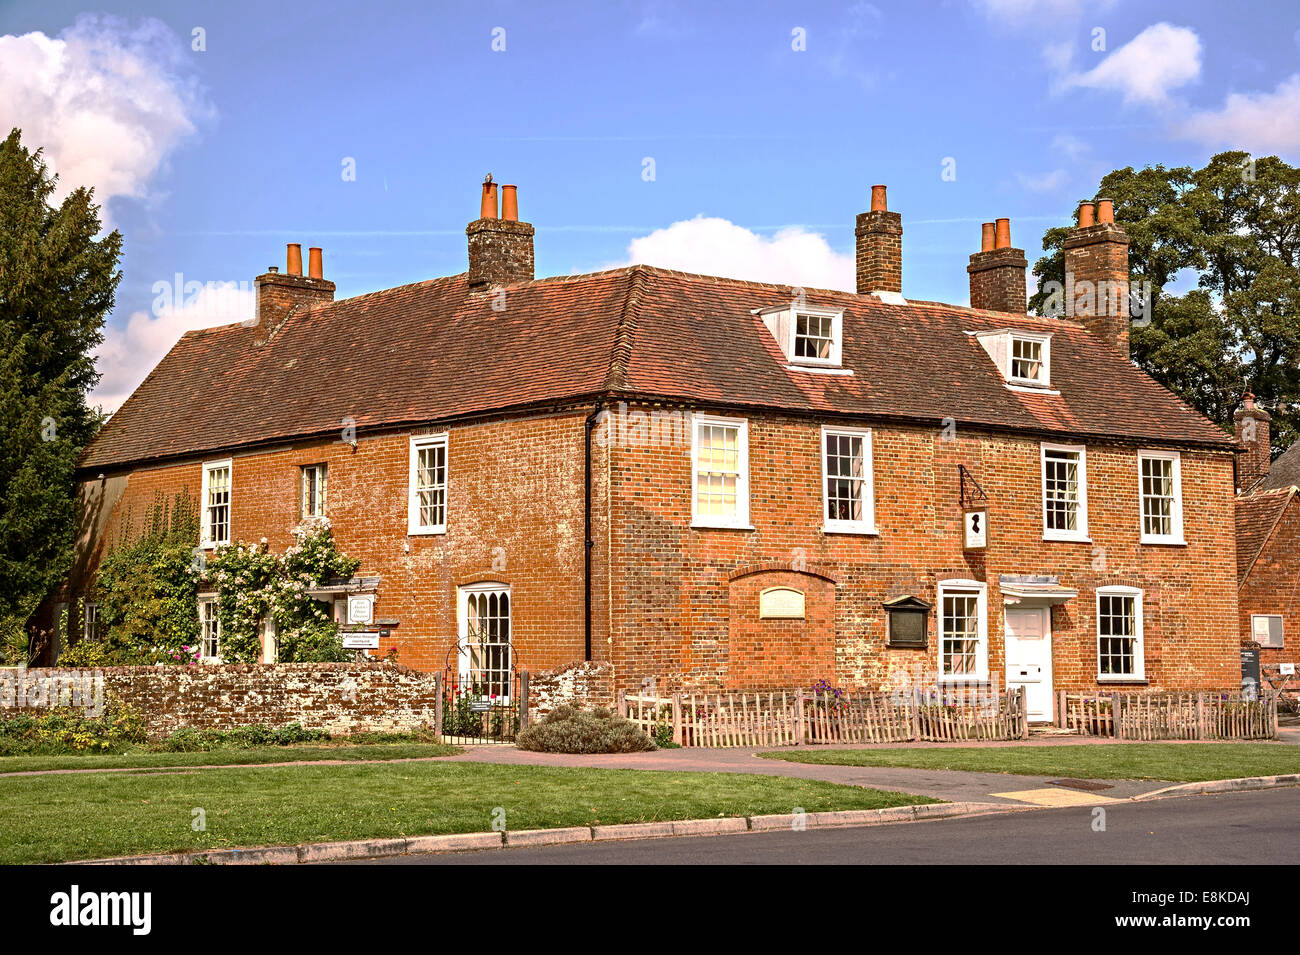 Maison de Jane Austen ; un musée à Chawton, dans le Hampshire, Angleterre, Royaume-Uni, Grande Bretagne, Wohnhaus von Jane Austen Banque D'Images